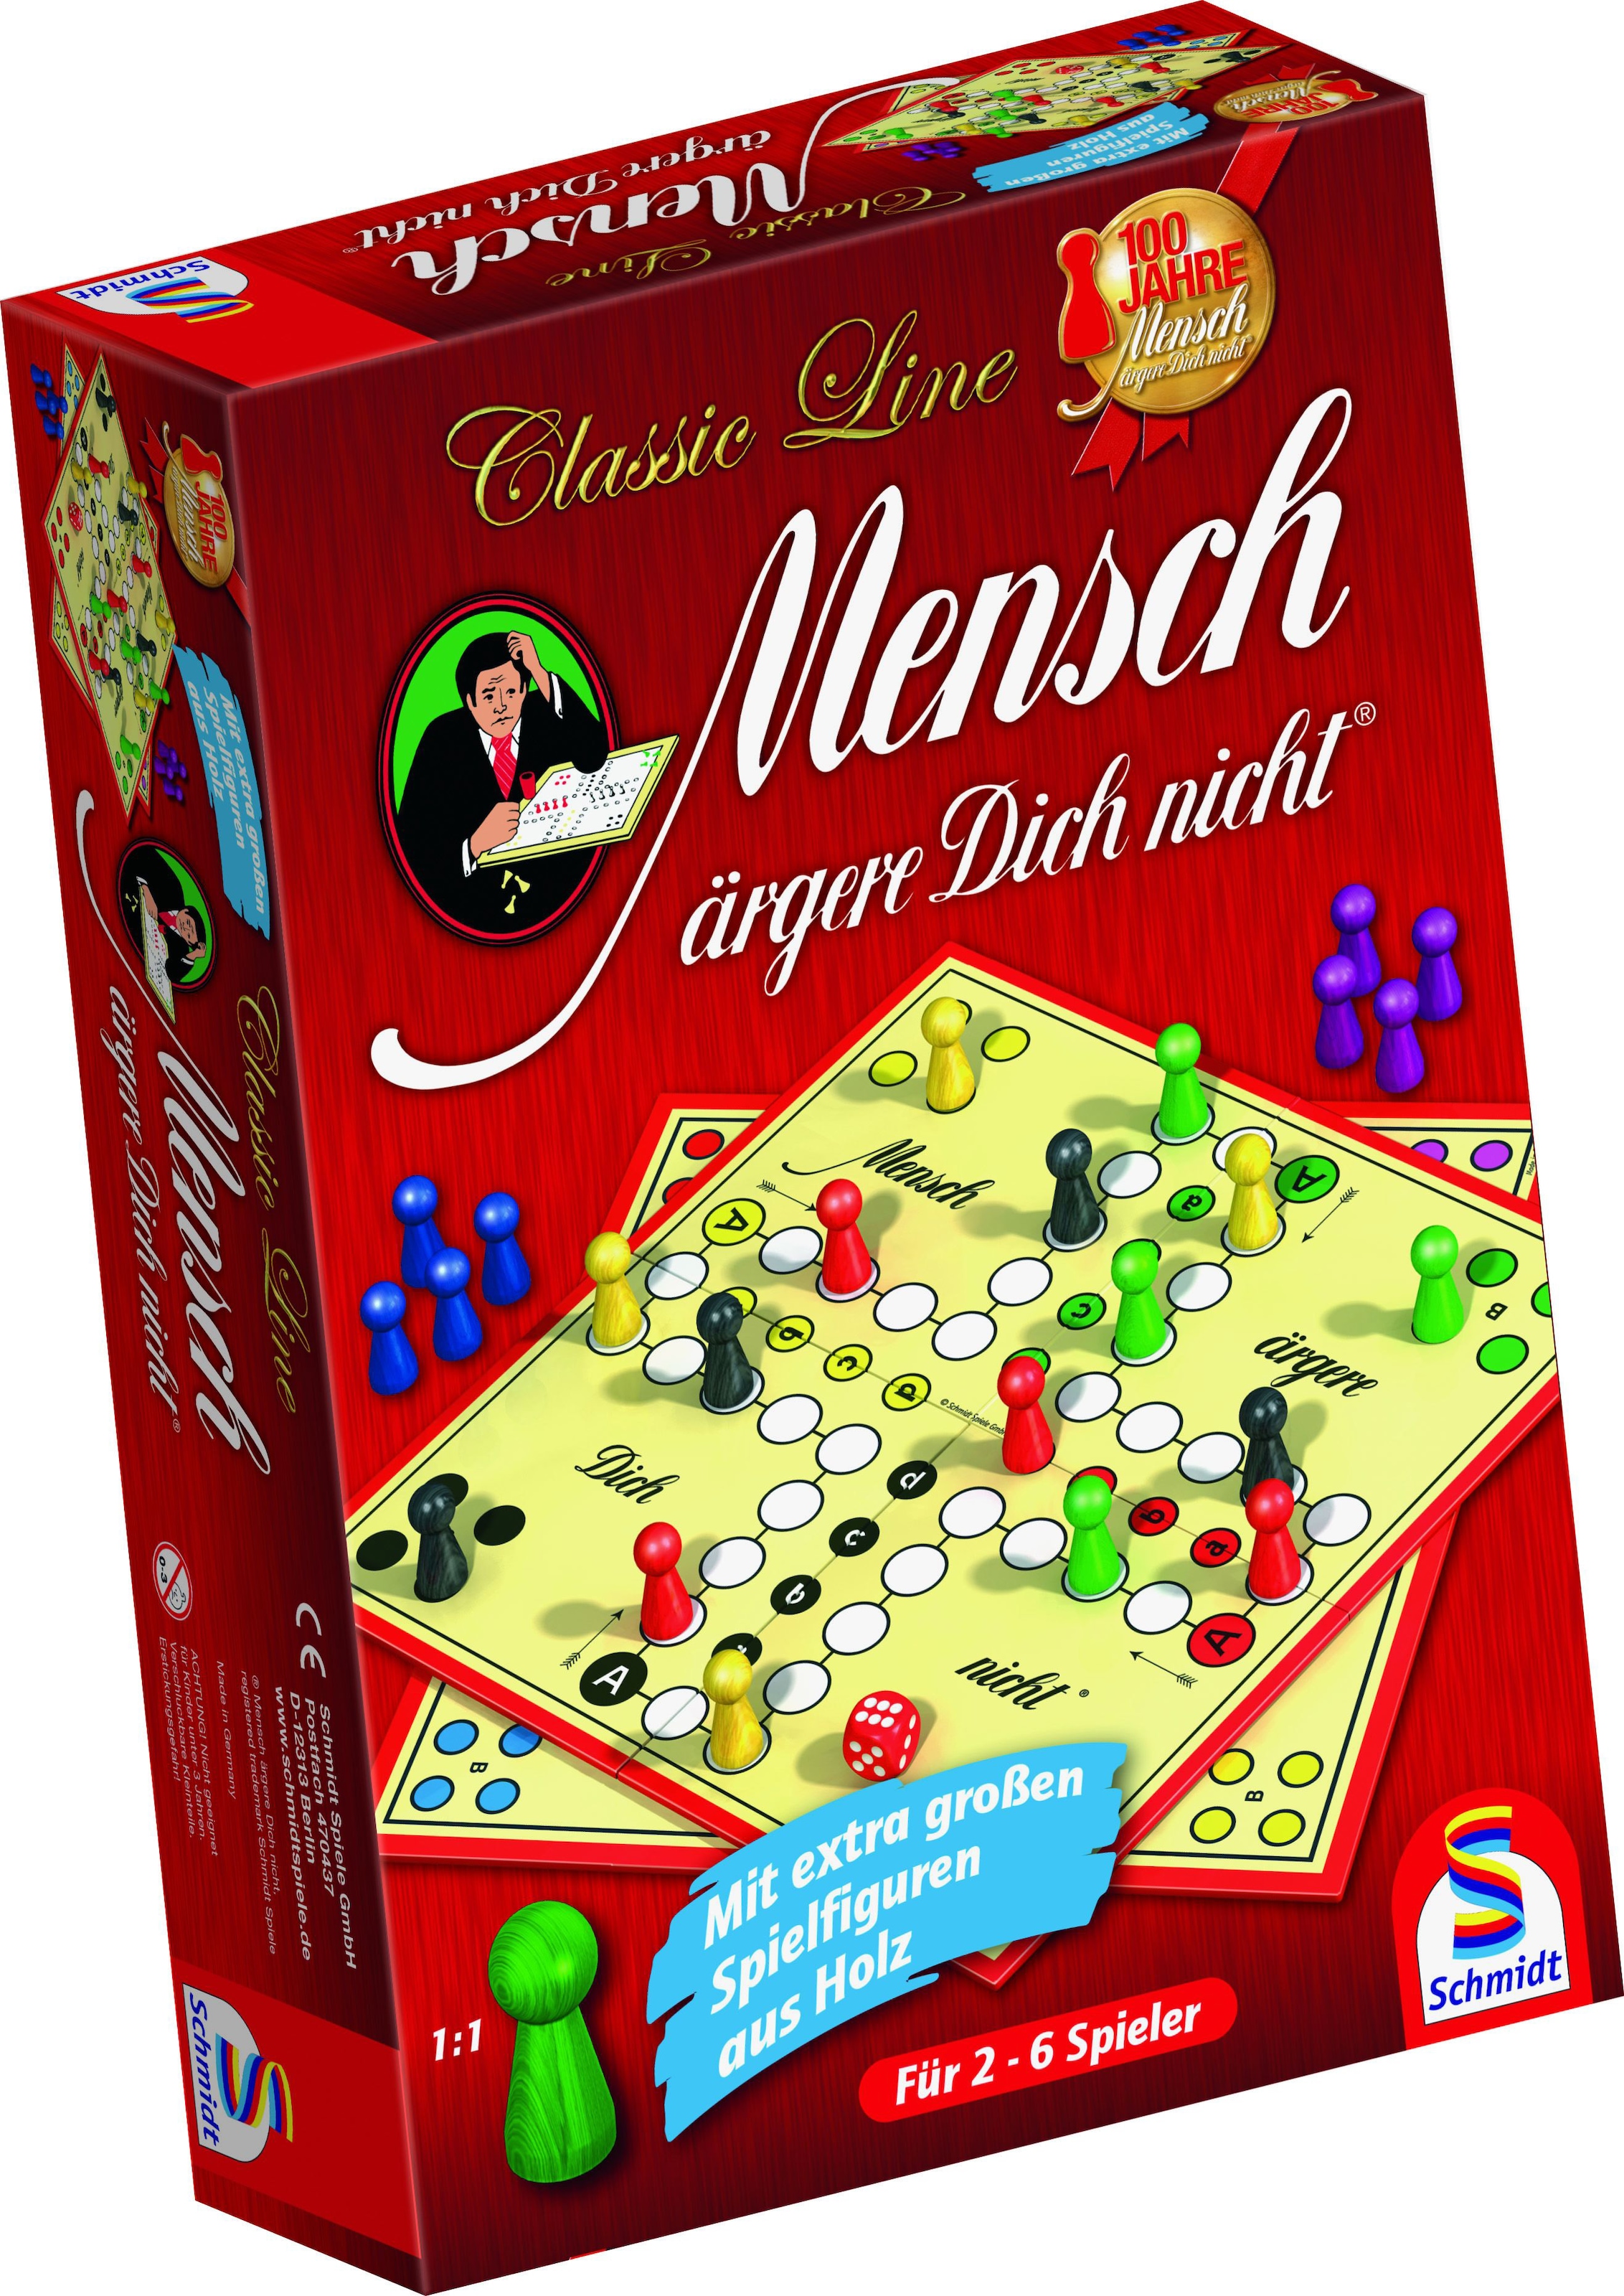 Schmidt Spiele Spiel »Classic Line, Mensch ärgere Dich nicht®«, mit großen Spielfiguren, Made in Germany